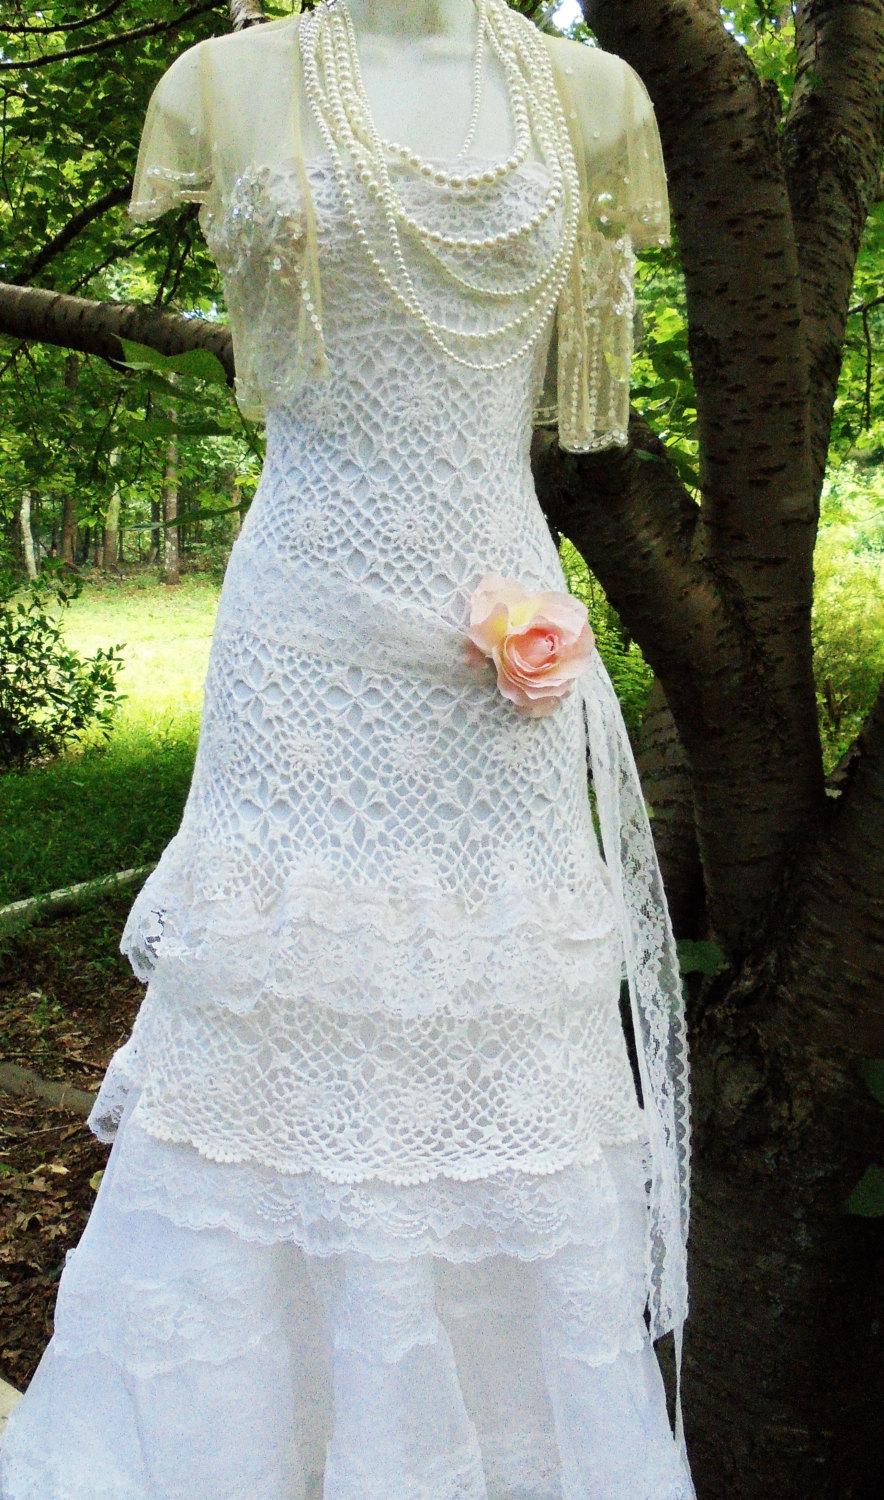 زفاف - Crochet lace dress wedding white ivory strapless lace tulle tiered boho  vintage  bride outdoor  romantic medium by vintage opulence on Etsy